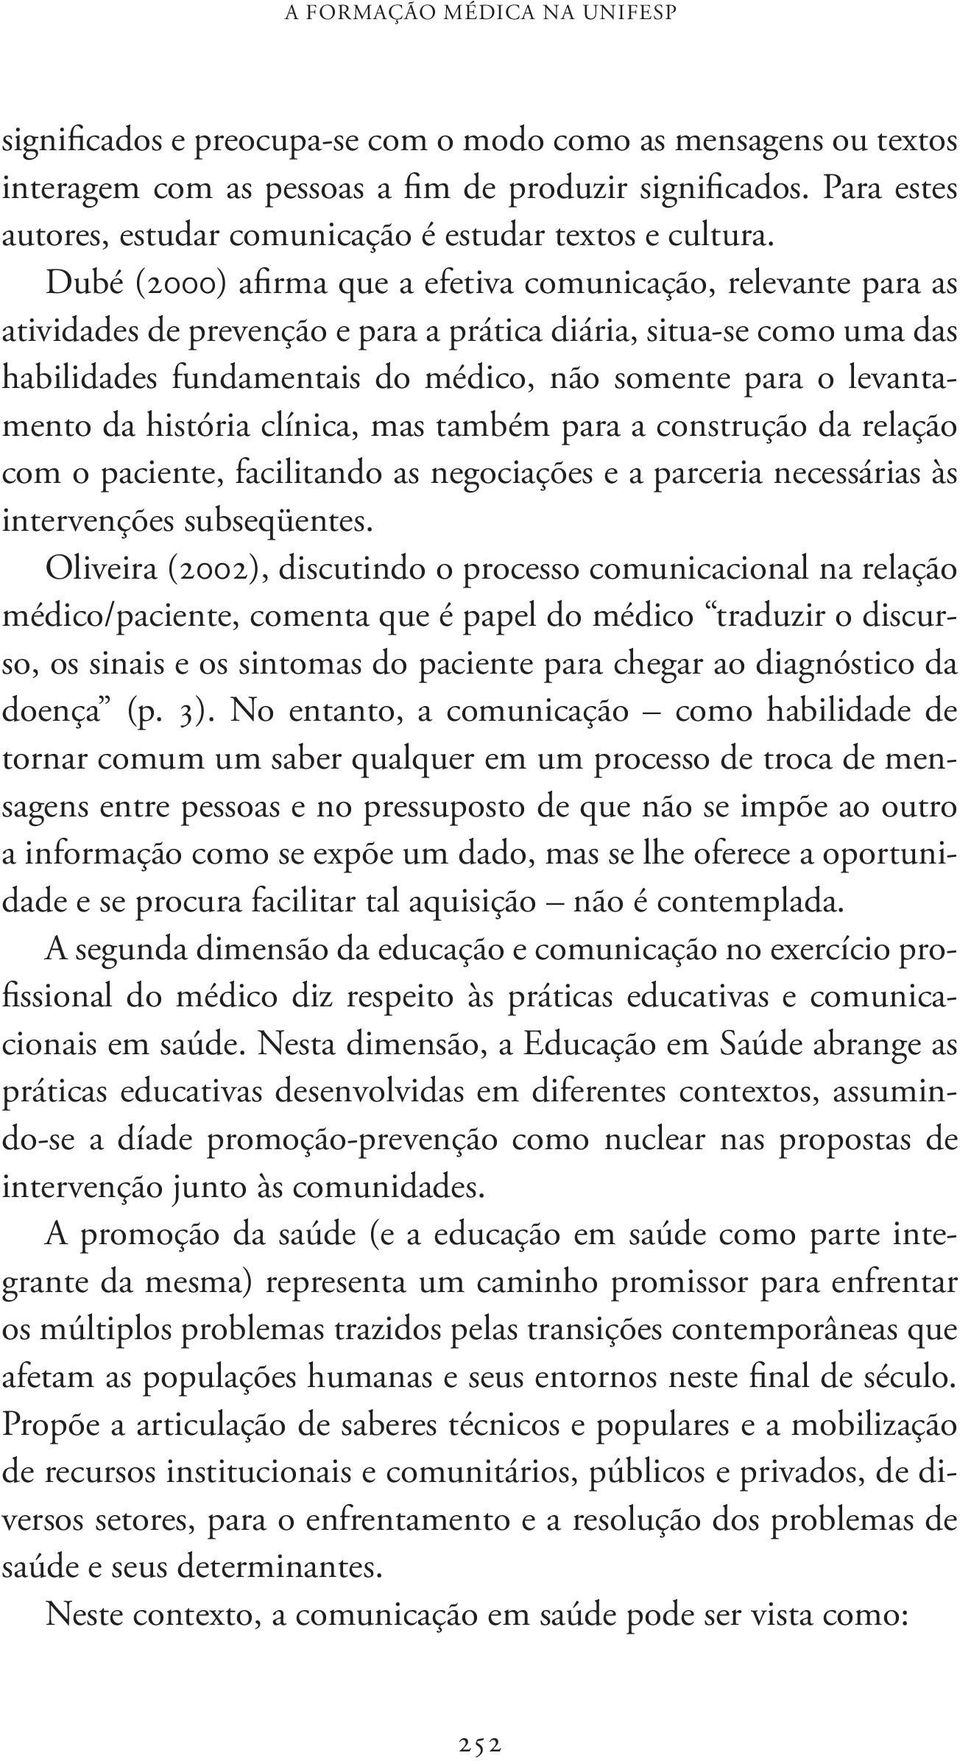 Dubé (2000) afirma que a efetiva comunicação, relevante para as atividades de prevenção e para a prática diária, situa-se como uma das habilidades fundamentais do médico, não somente para o